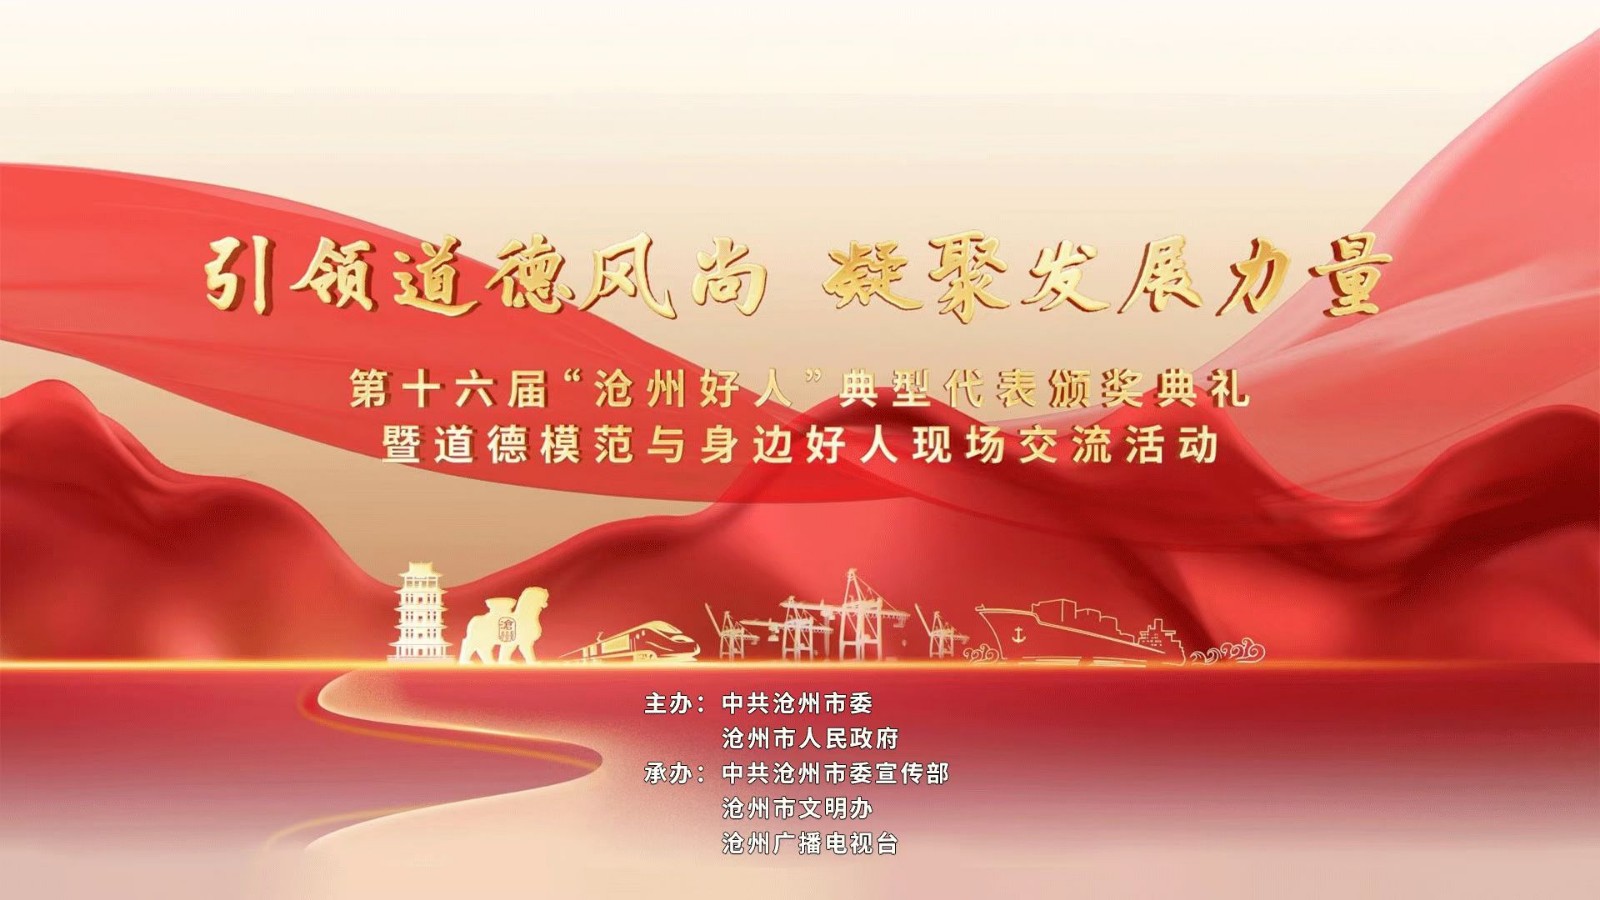 第十六届“沧州好人”典型代表颁奖典礼